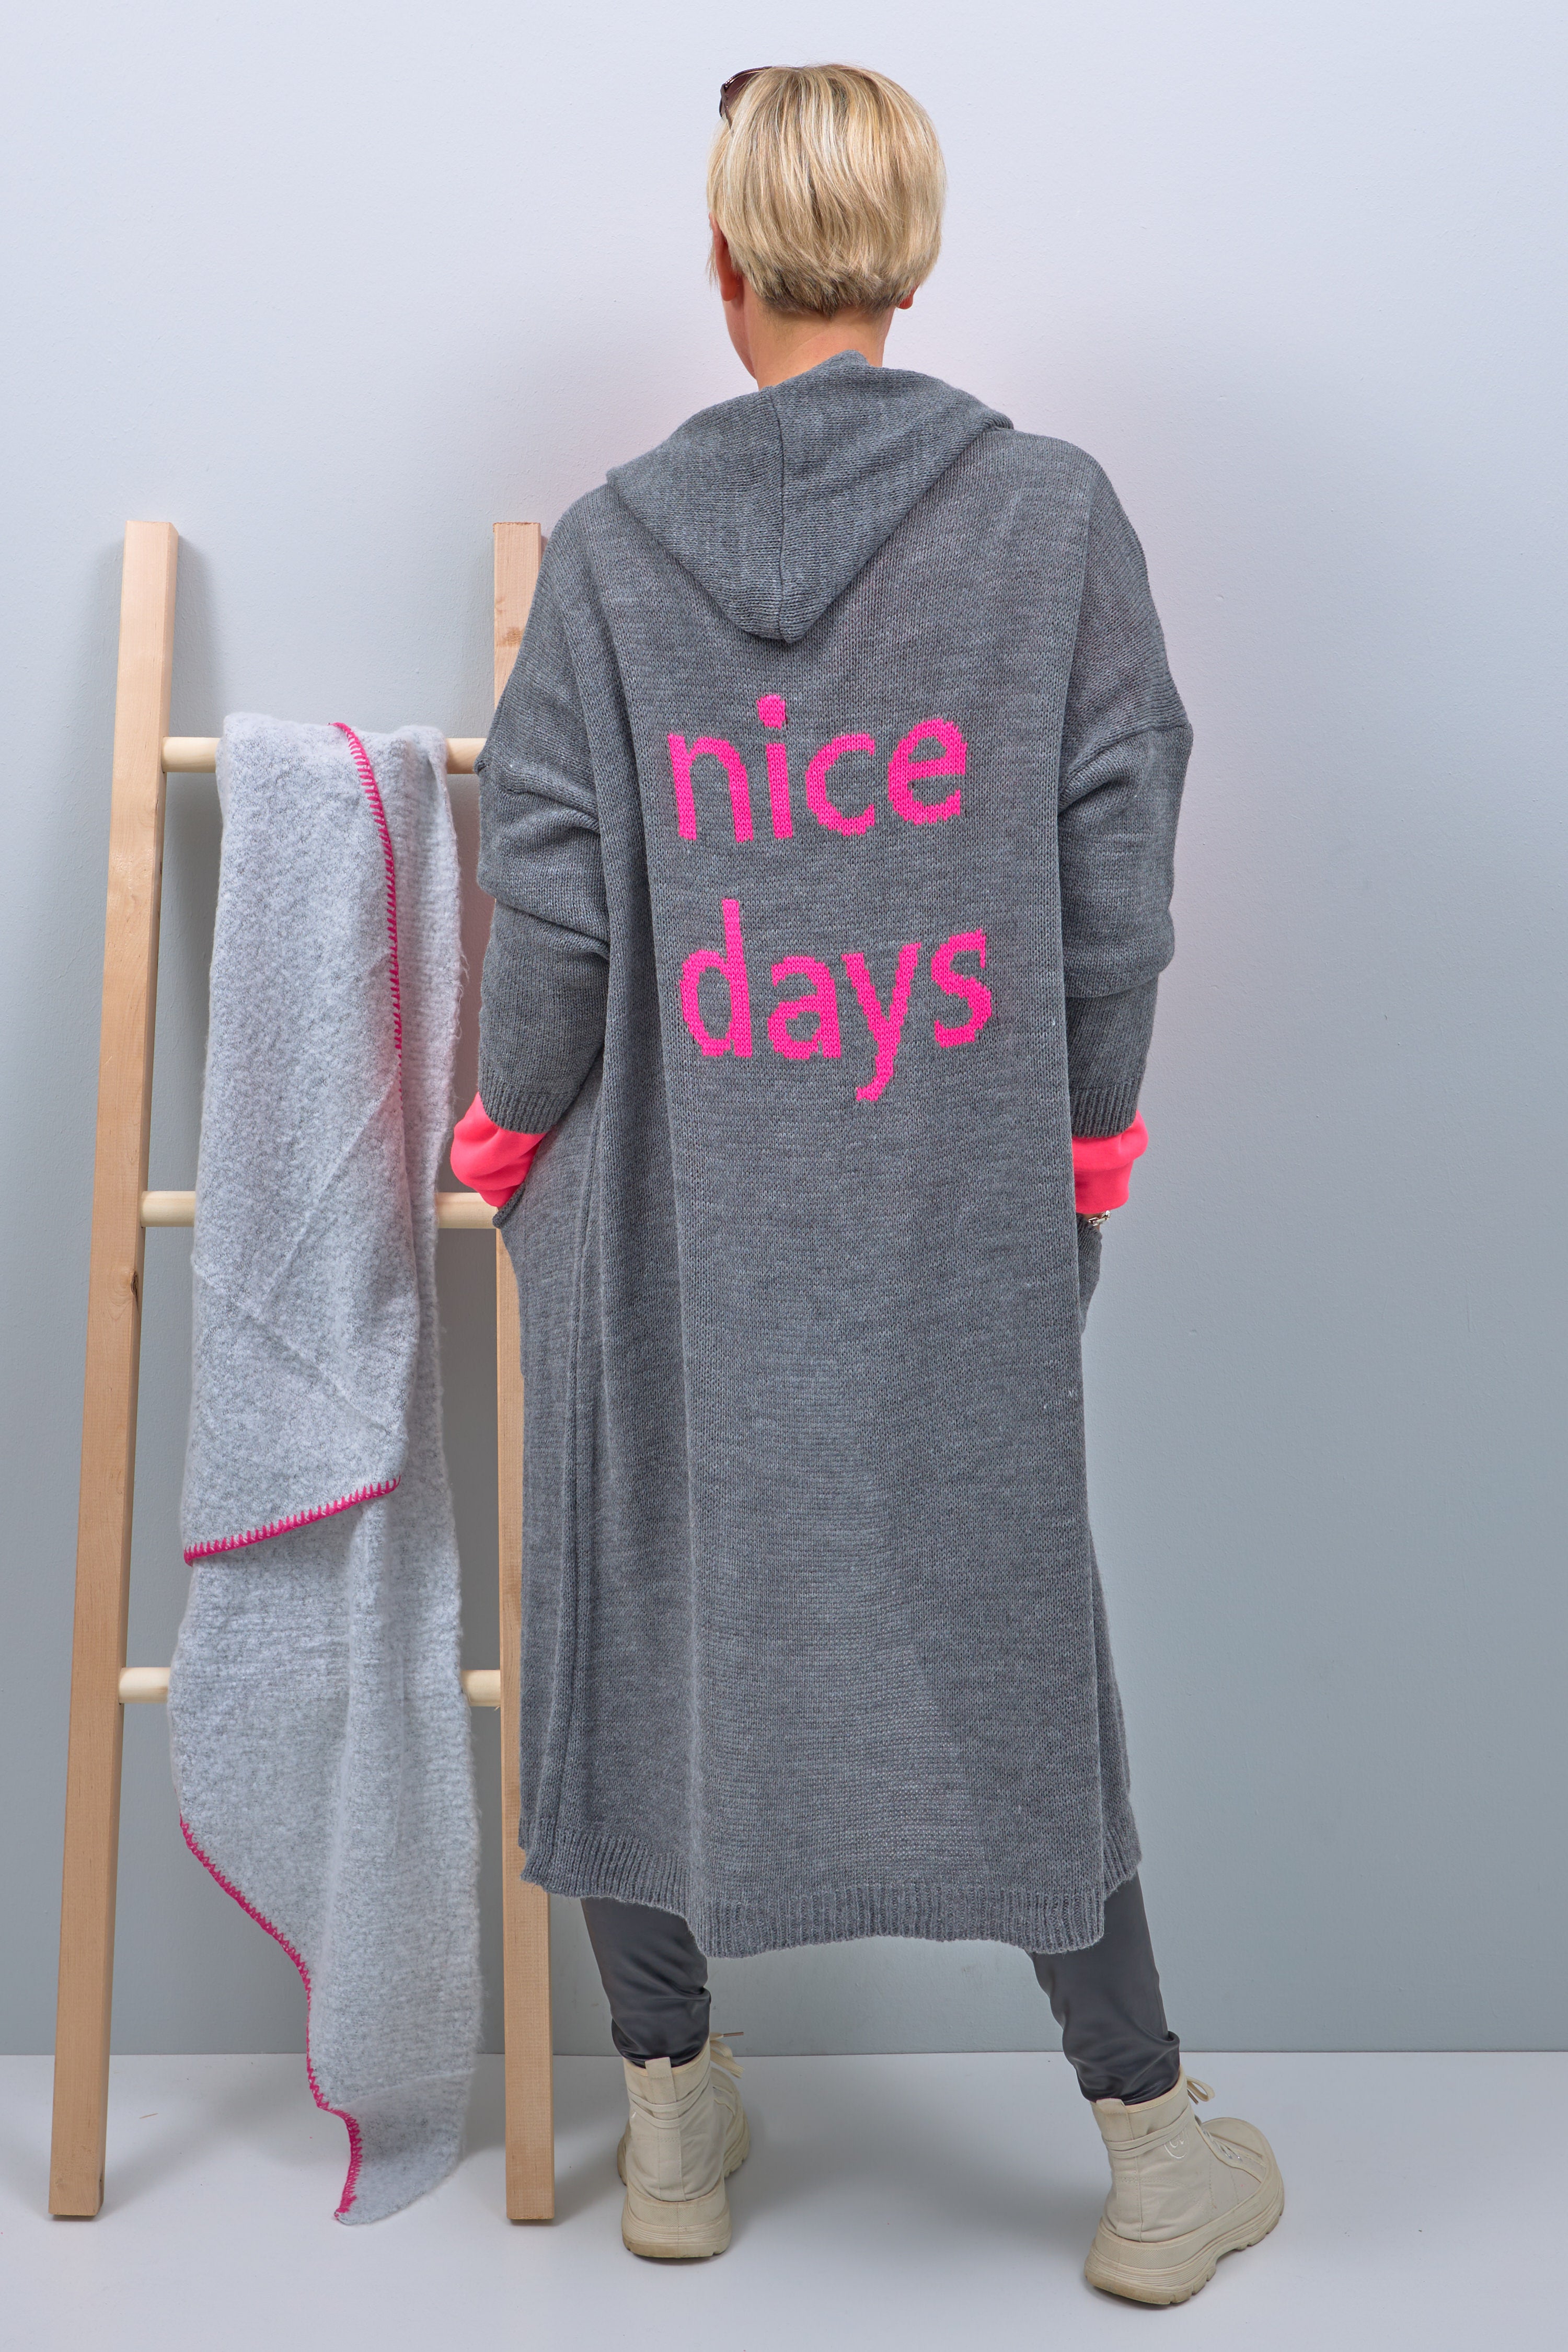 Lange Strickjacke mit Kapuze und Schriftzug "nice days", grau-pink